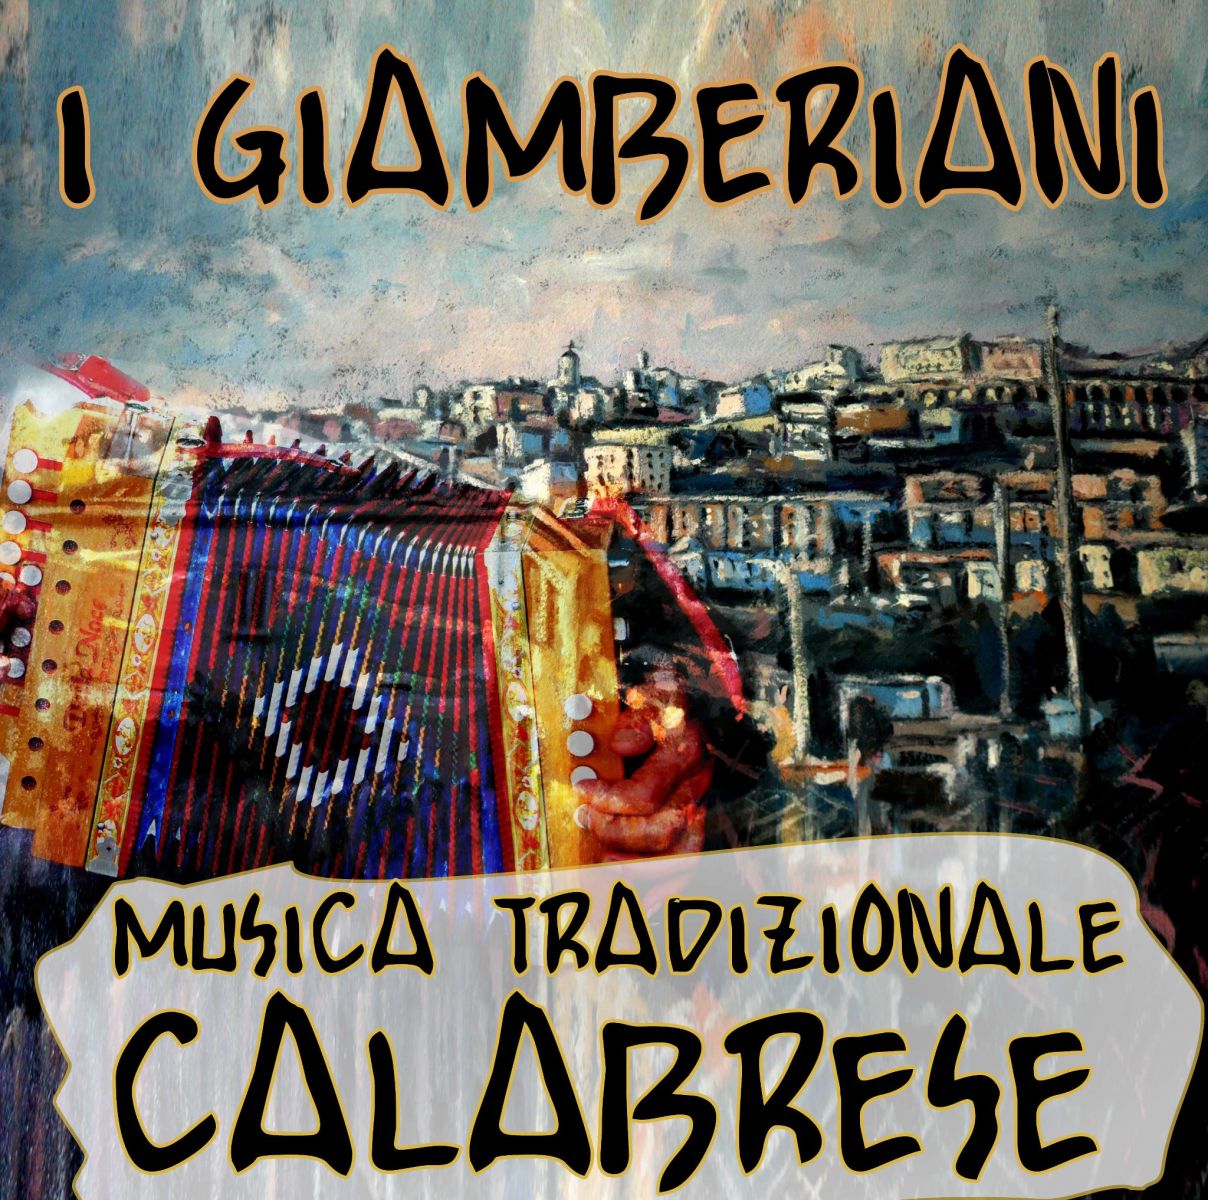 I Giamberiani - Gruppo di Musica Tradizionale Calabrese